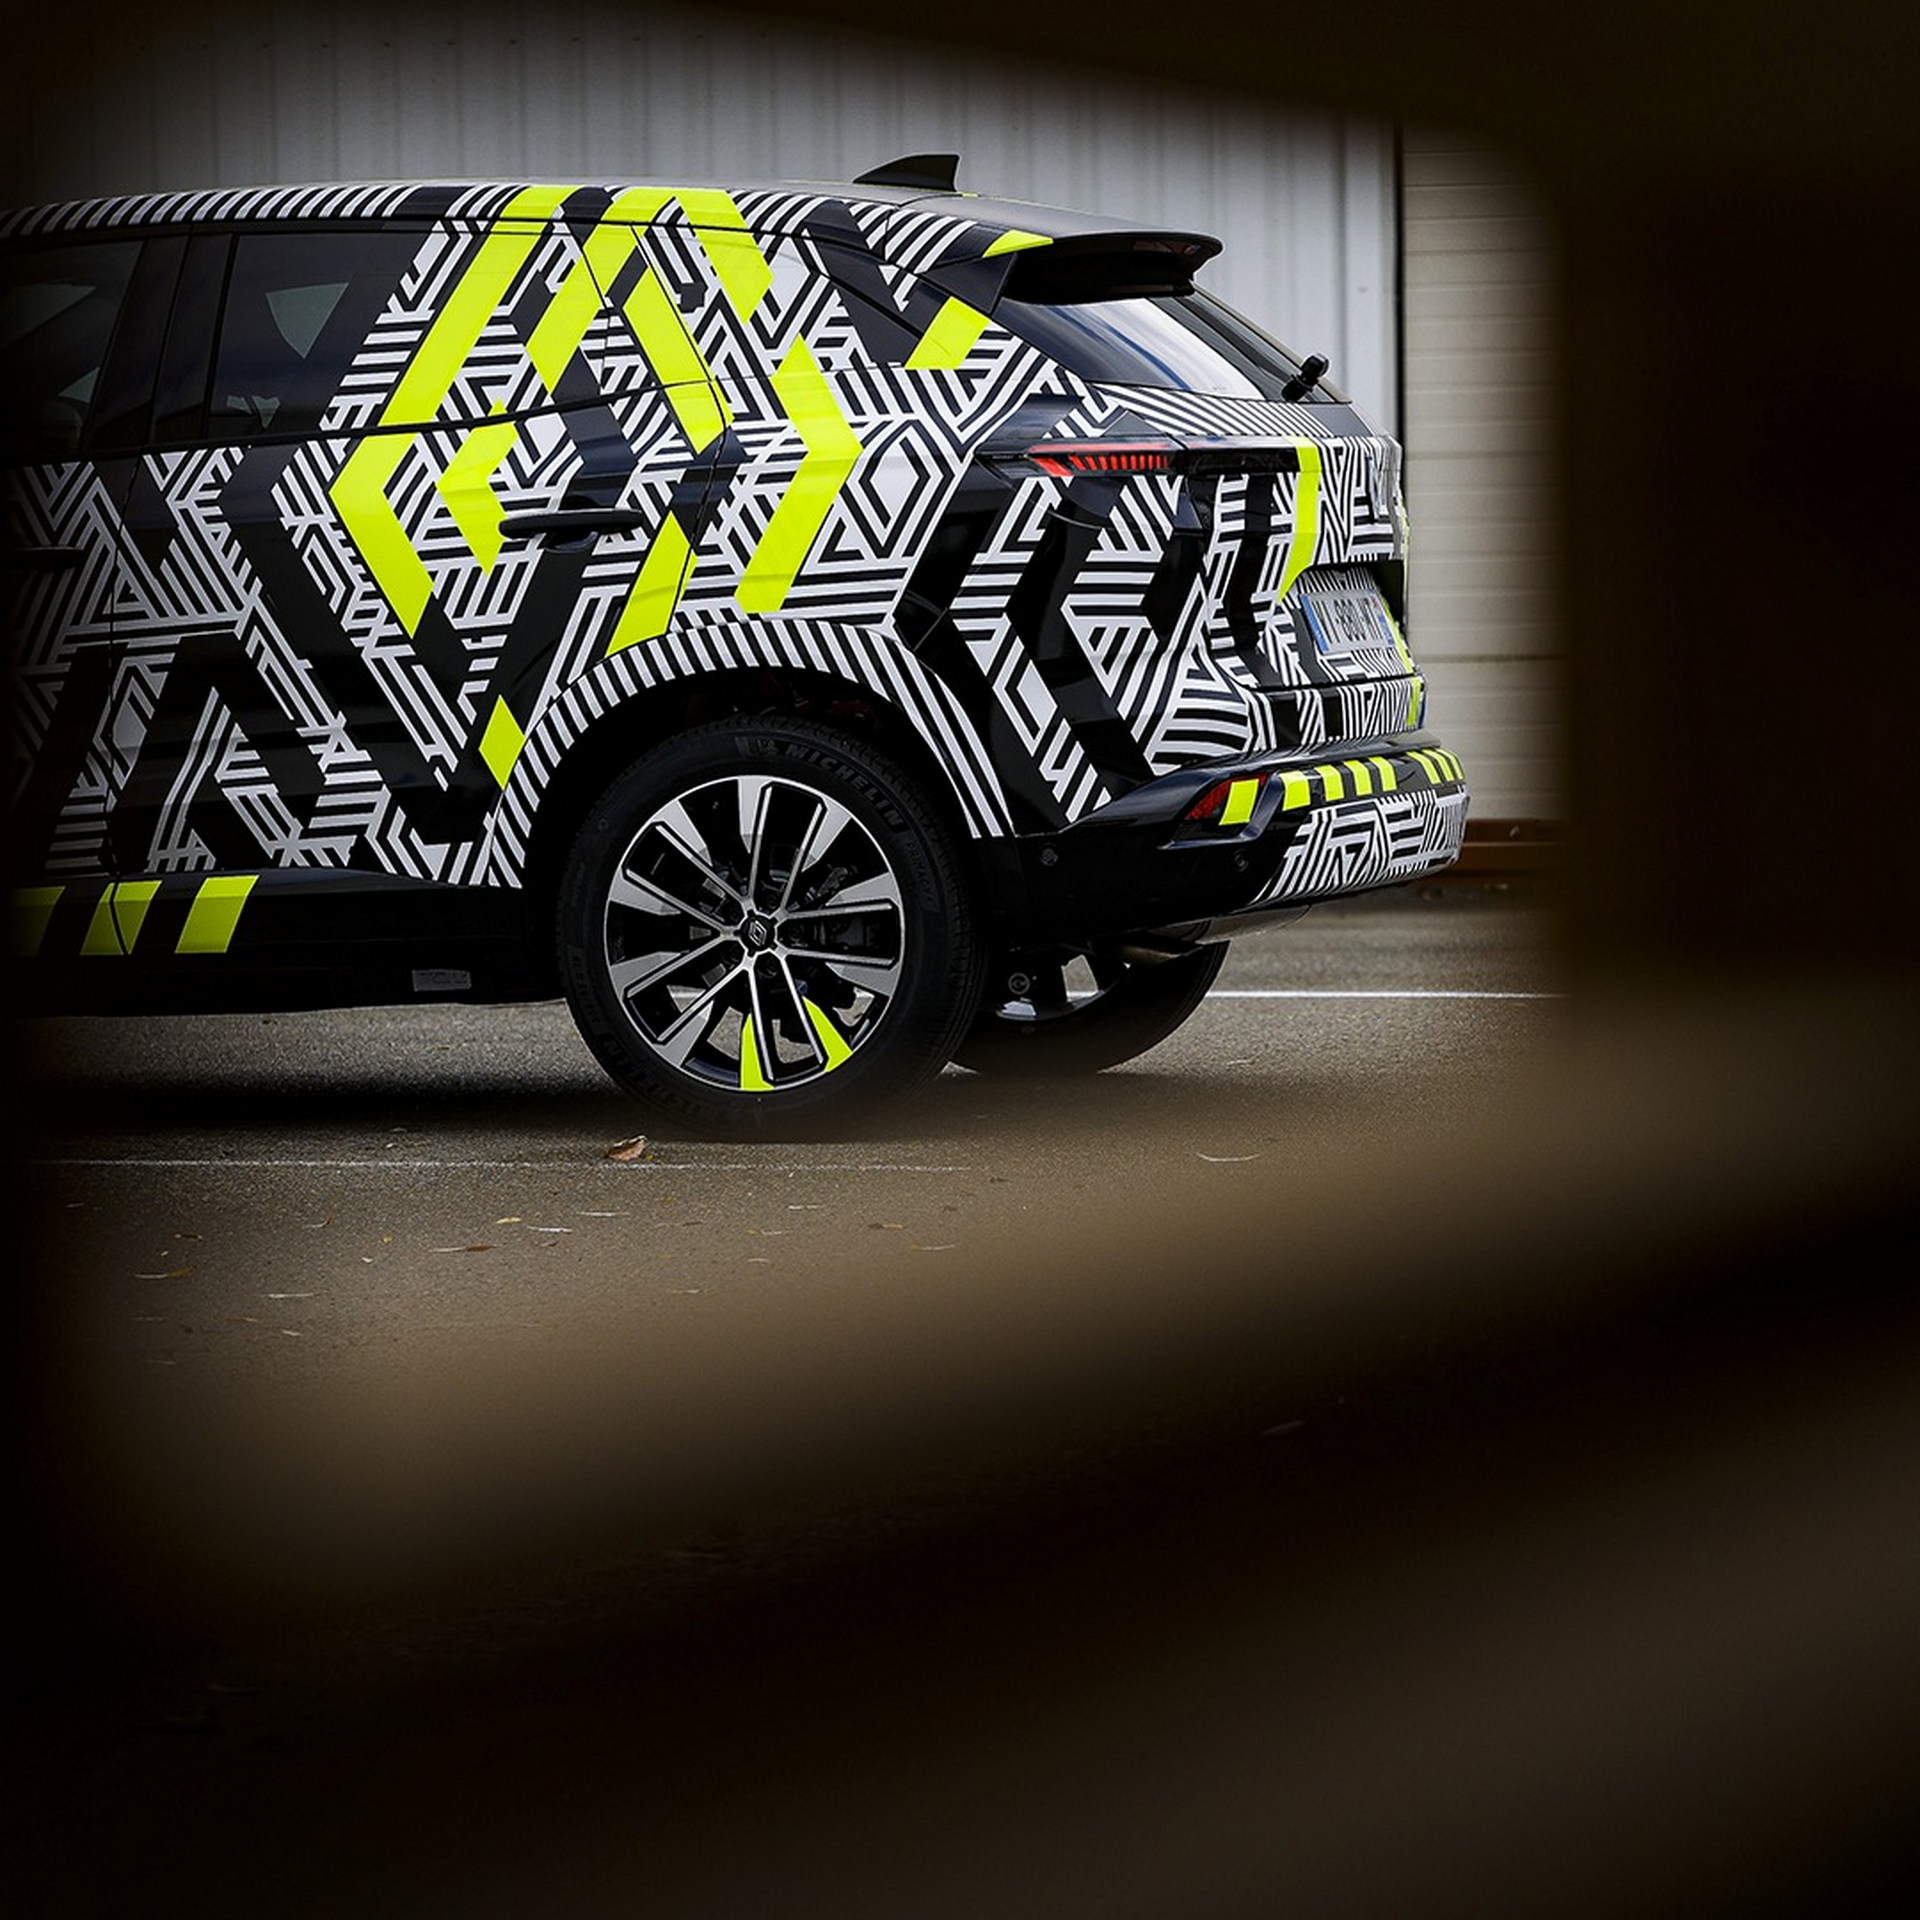 Renault Austral resim galerisi (28.02.2022)